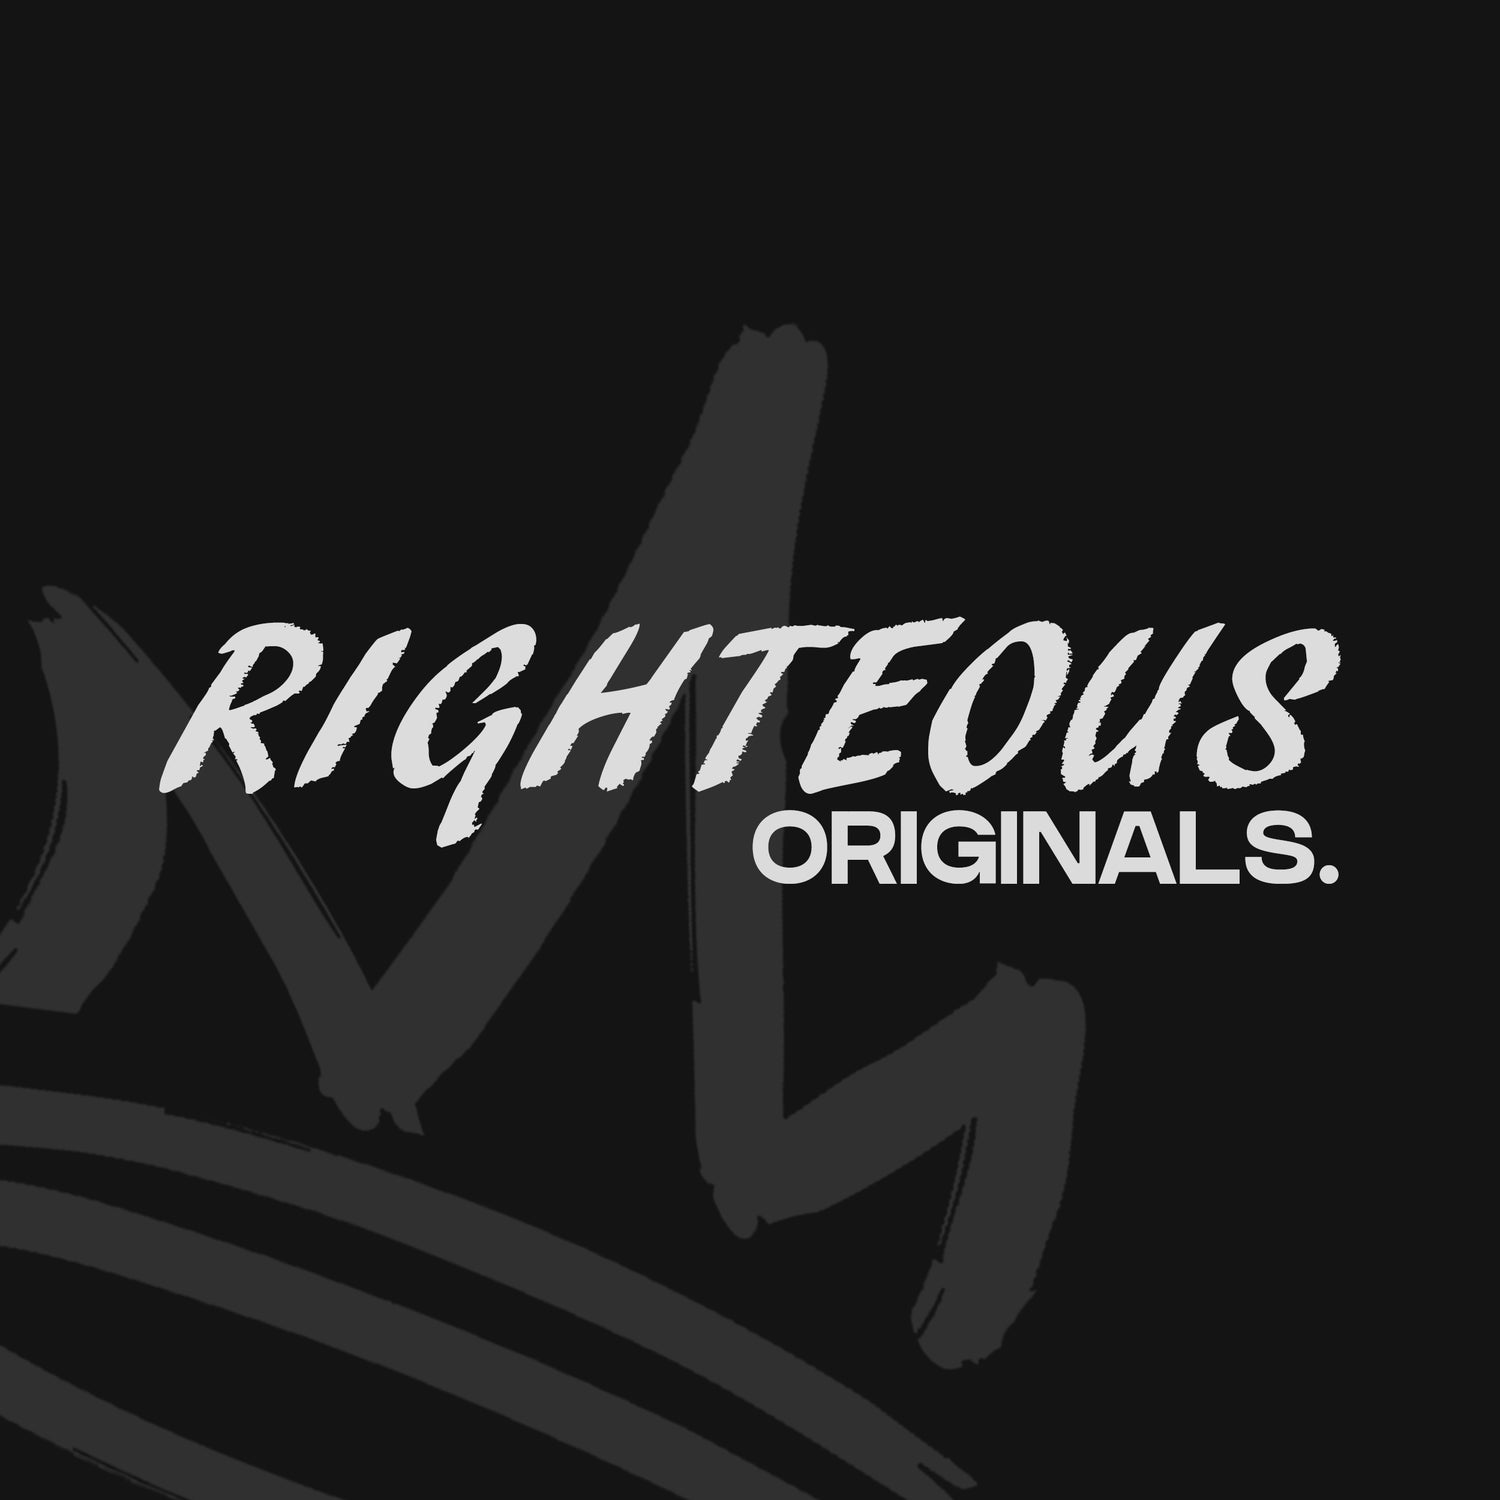 RIGHTEOUS ORIGINALS